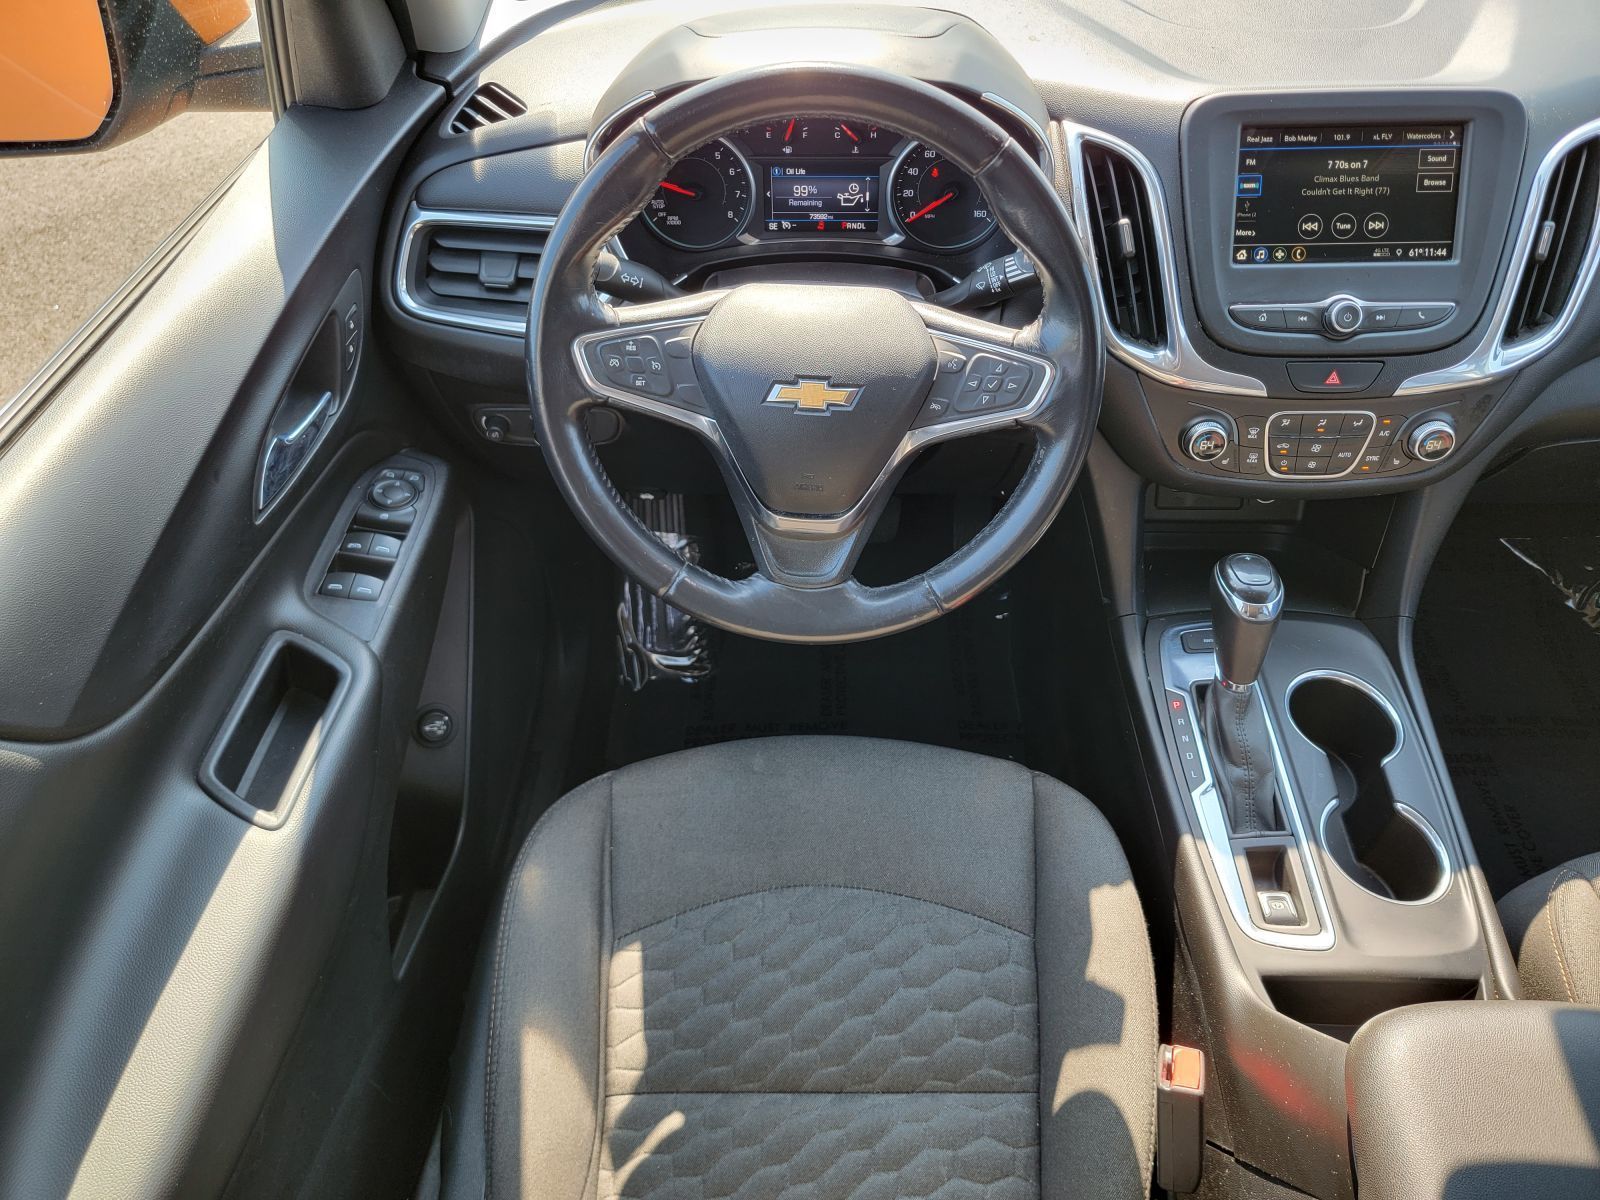 Used, 2019 Chevrolet Equinox LT, Orange, P0521-18